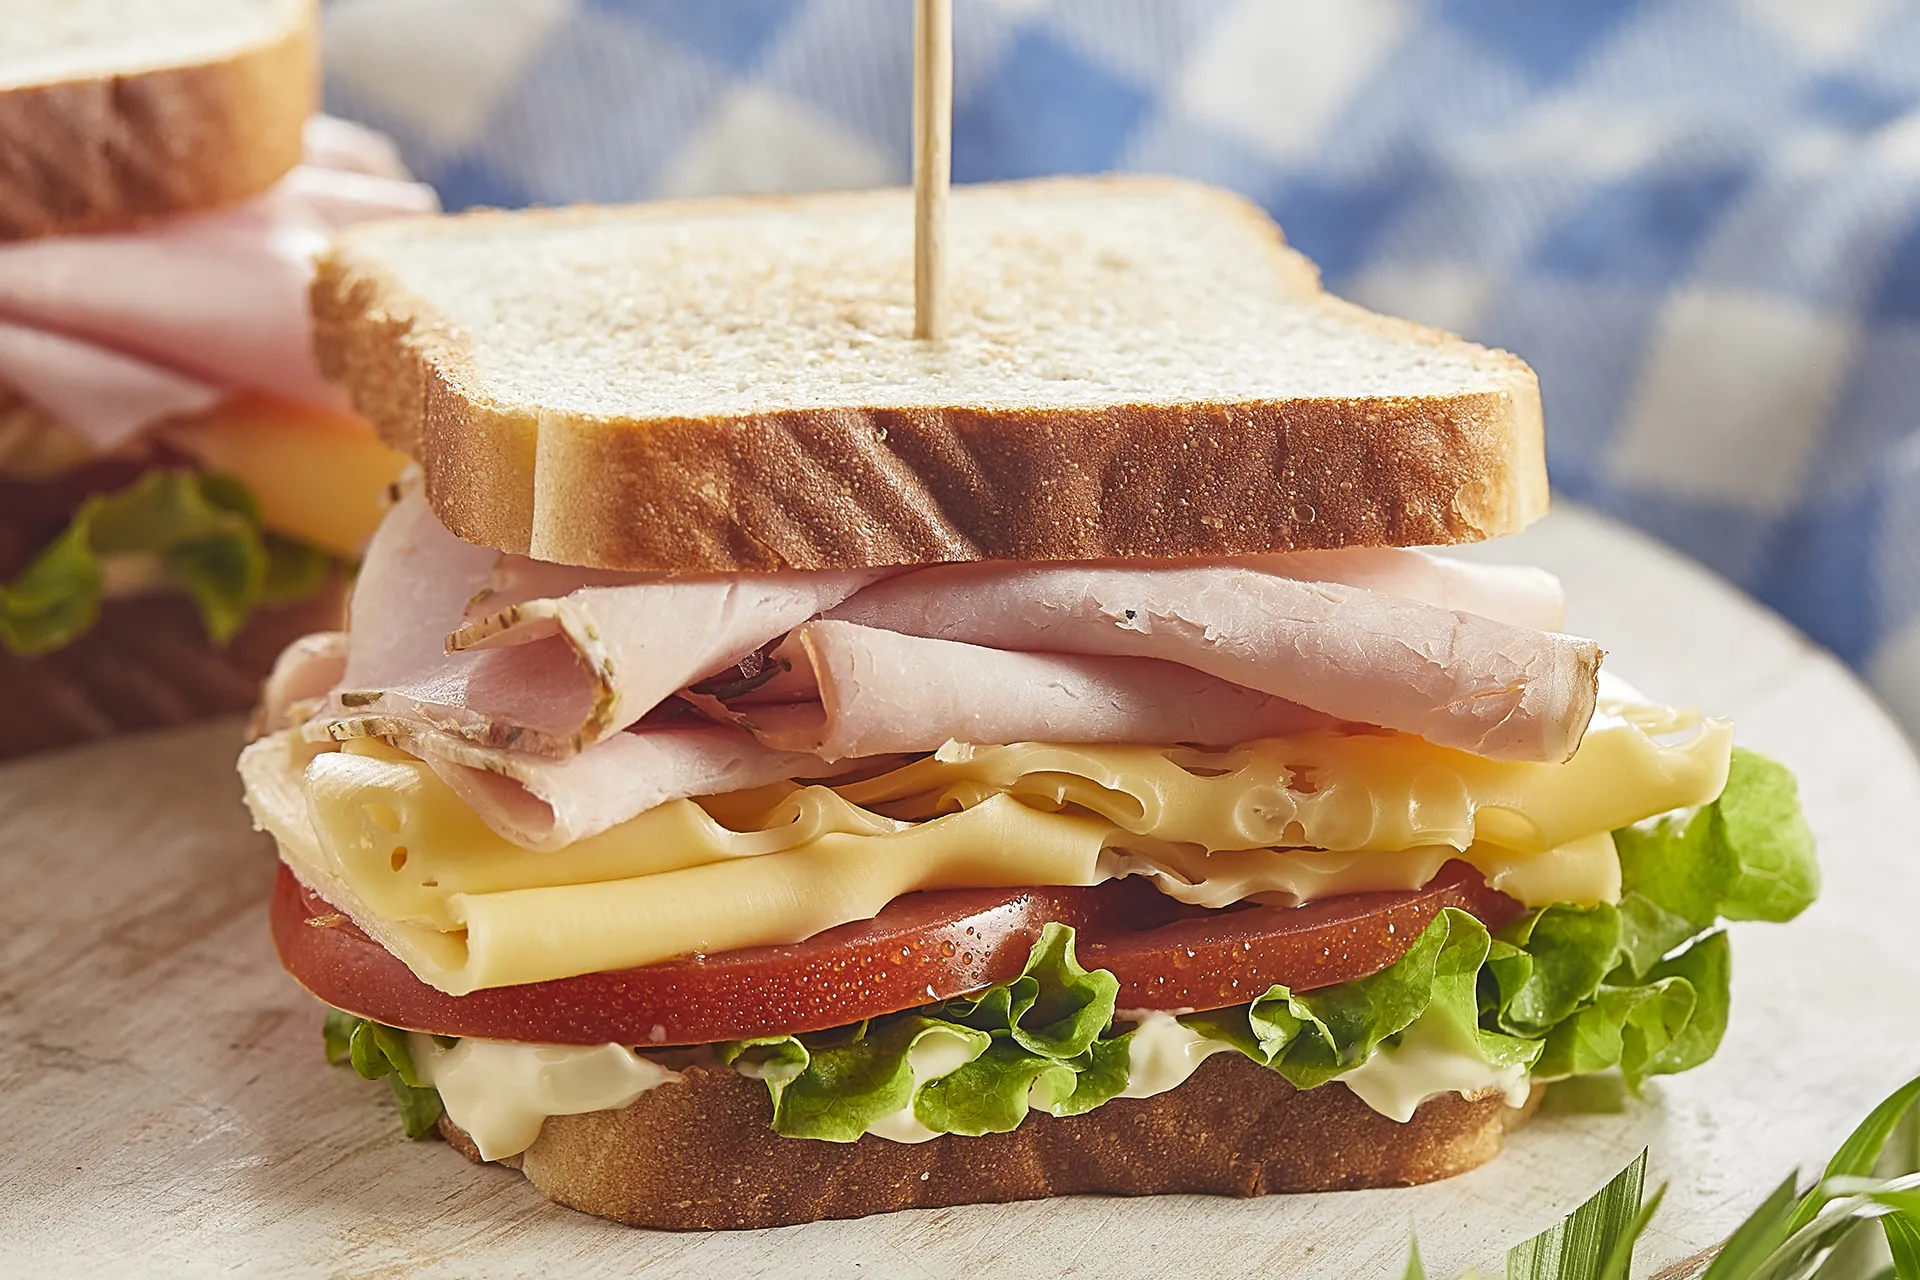 Sándwich con queso, lechuga, tomate, mayonesa y pechuga de pavo a las finas hierbas